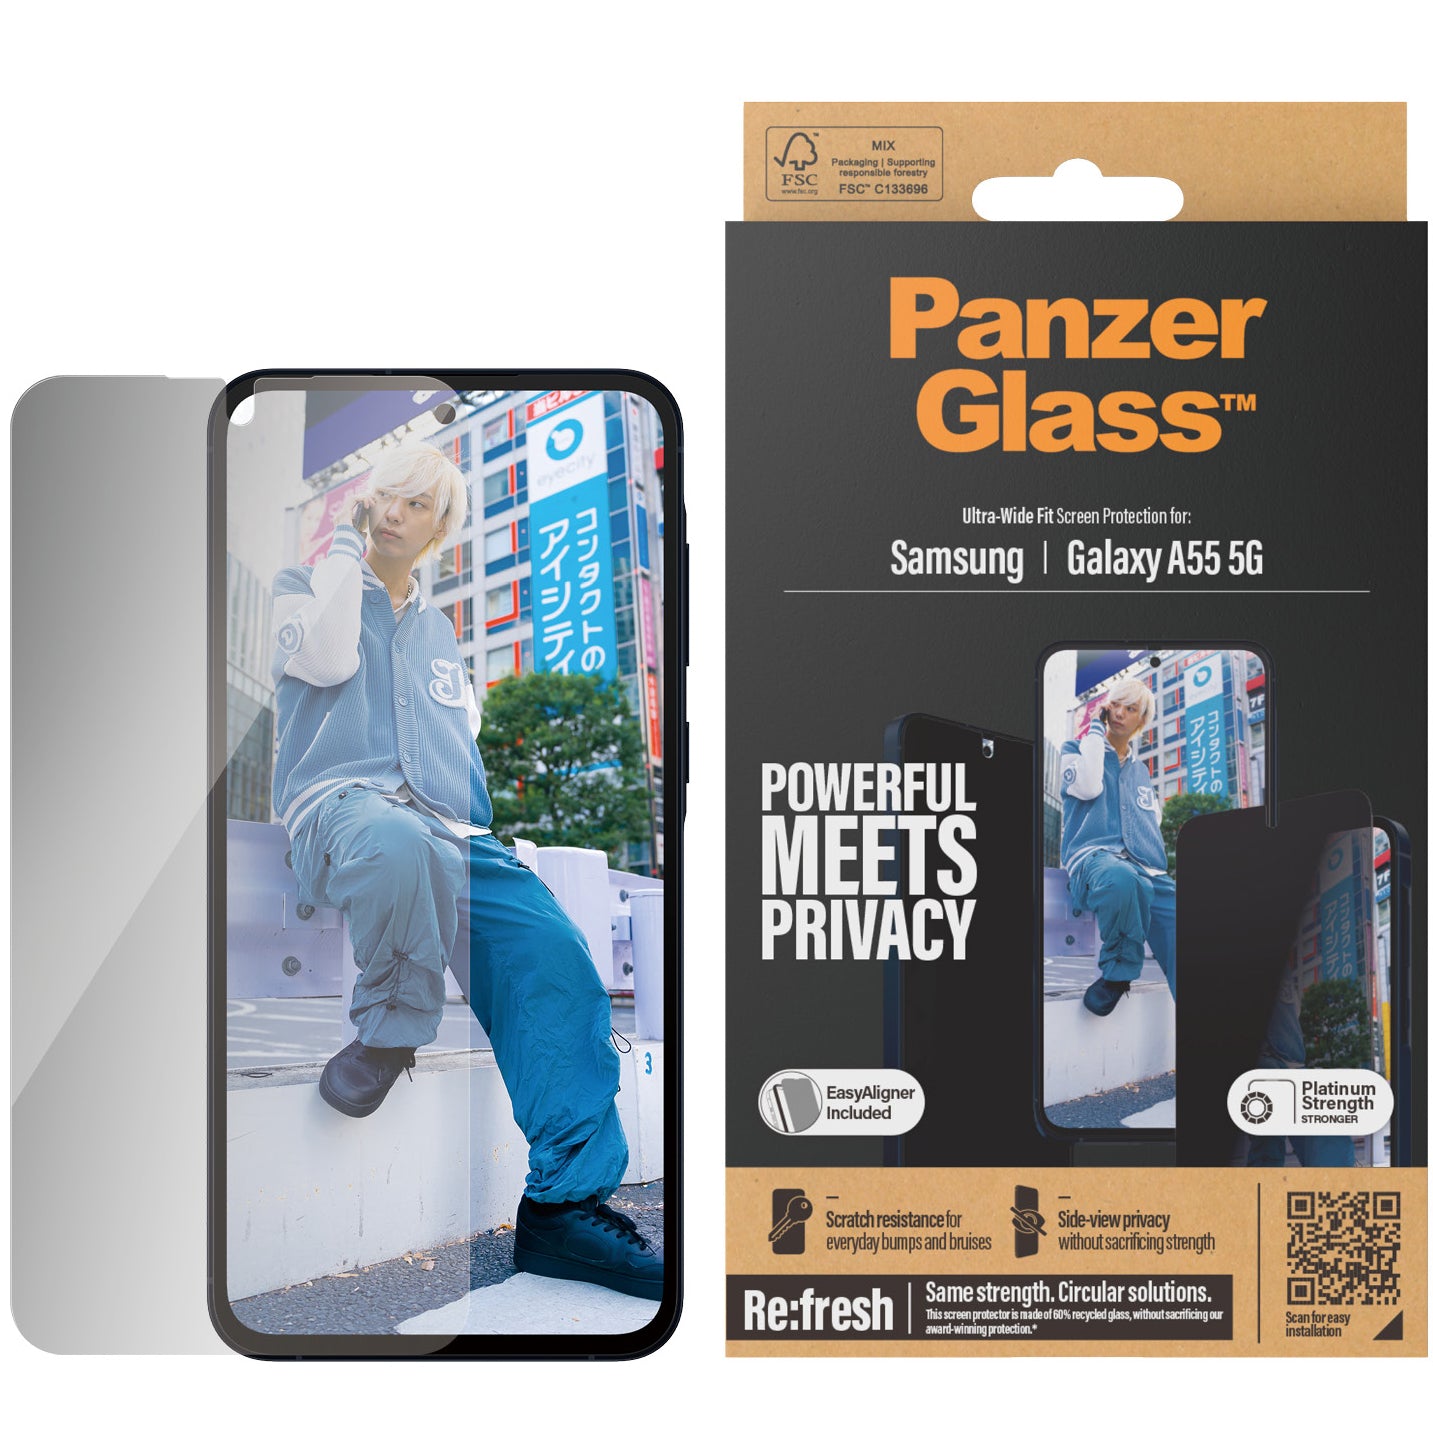 Gehärtetes Glas für Galaxy A55 5G für das gesamte Display PanzerGlass Ultra-Wide Fit Privacy + EasyAligner, Getönte